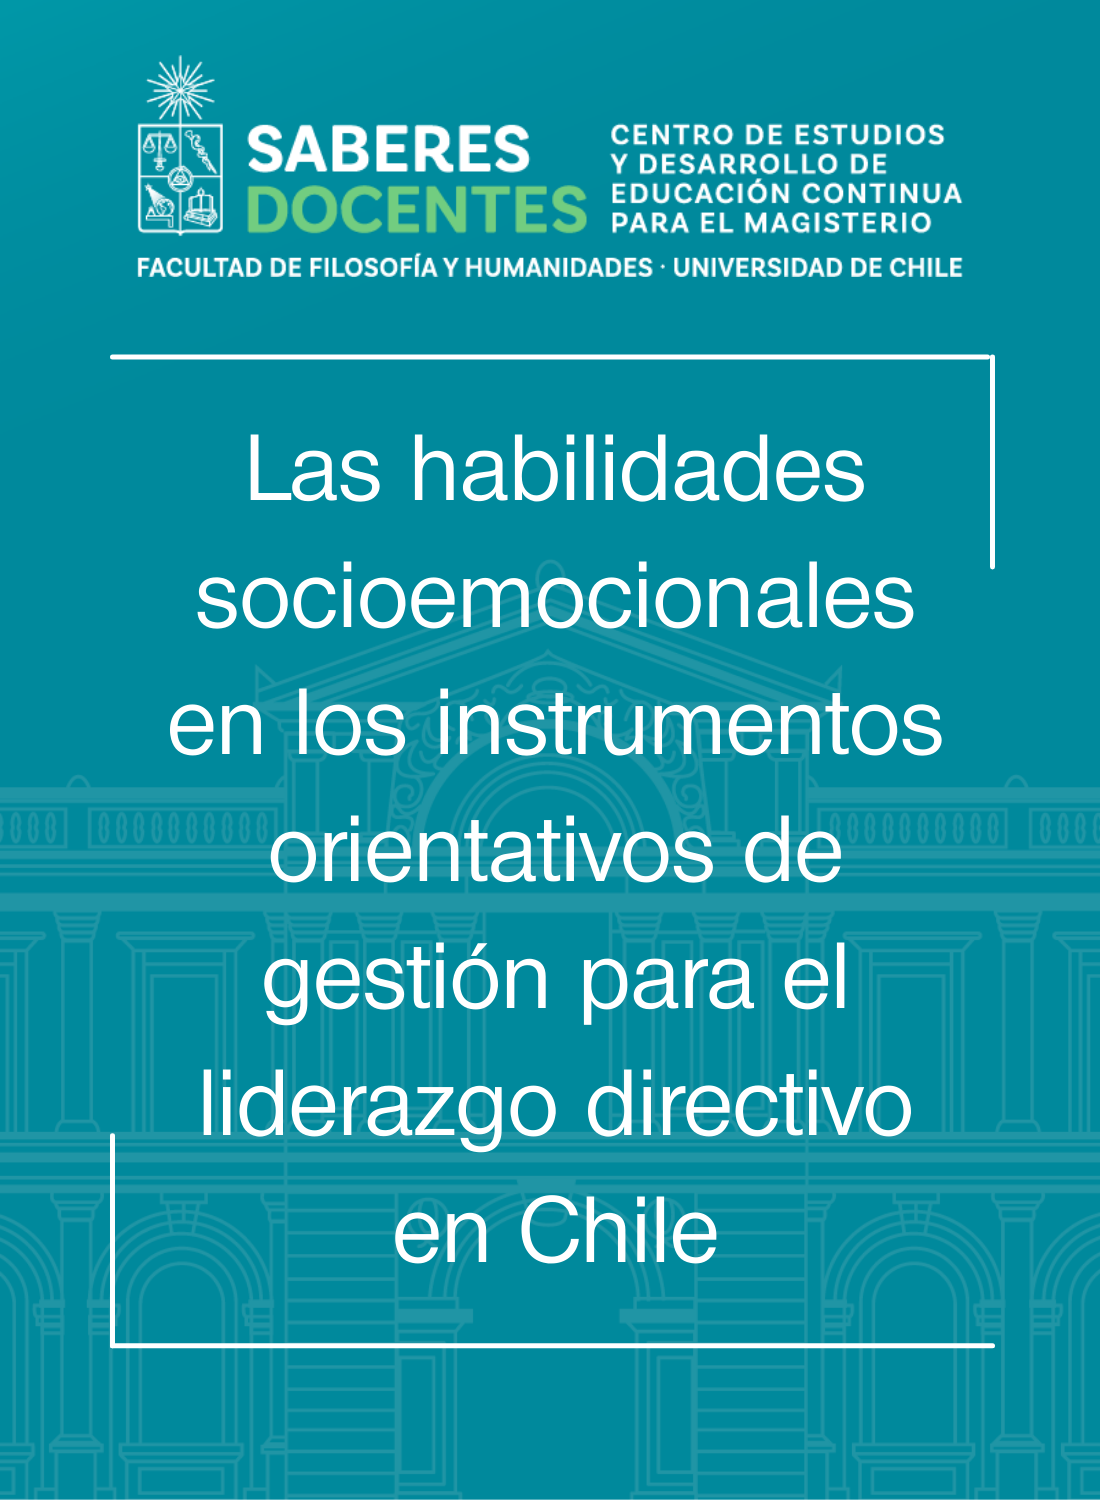 Las habilidades socioemocionales en los instrumentos orientativos de gestión para el liderazgo directivo en Chile